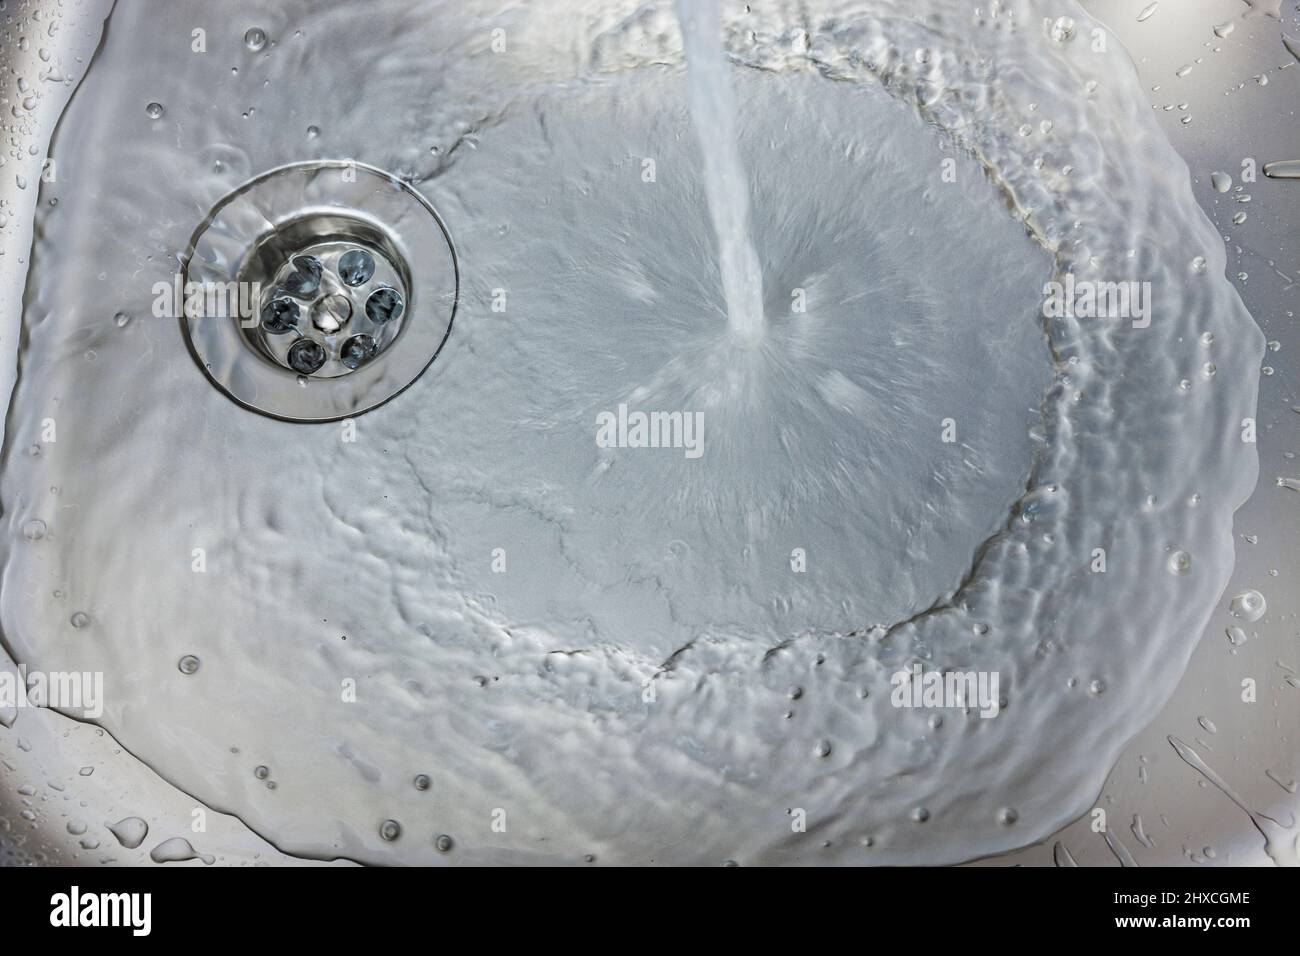 L'eau coule d'un robinet dans un évier Banque D'Images